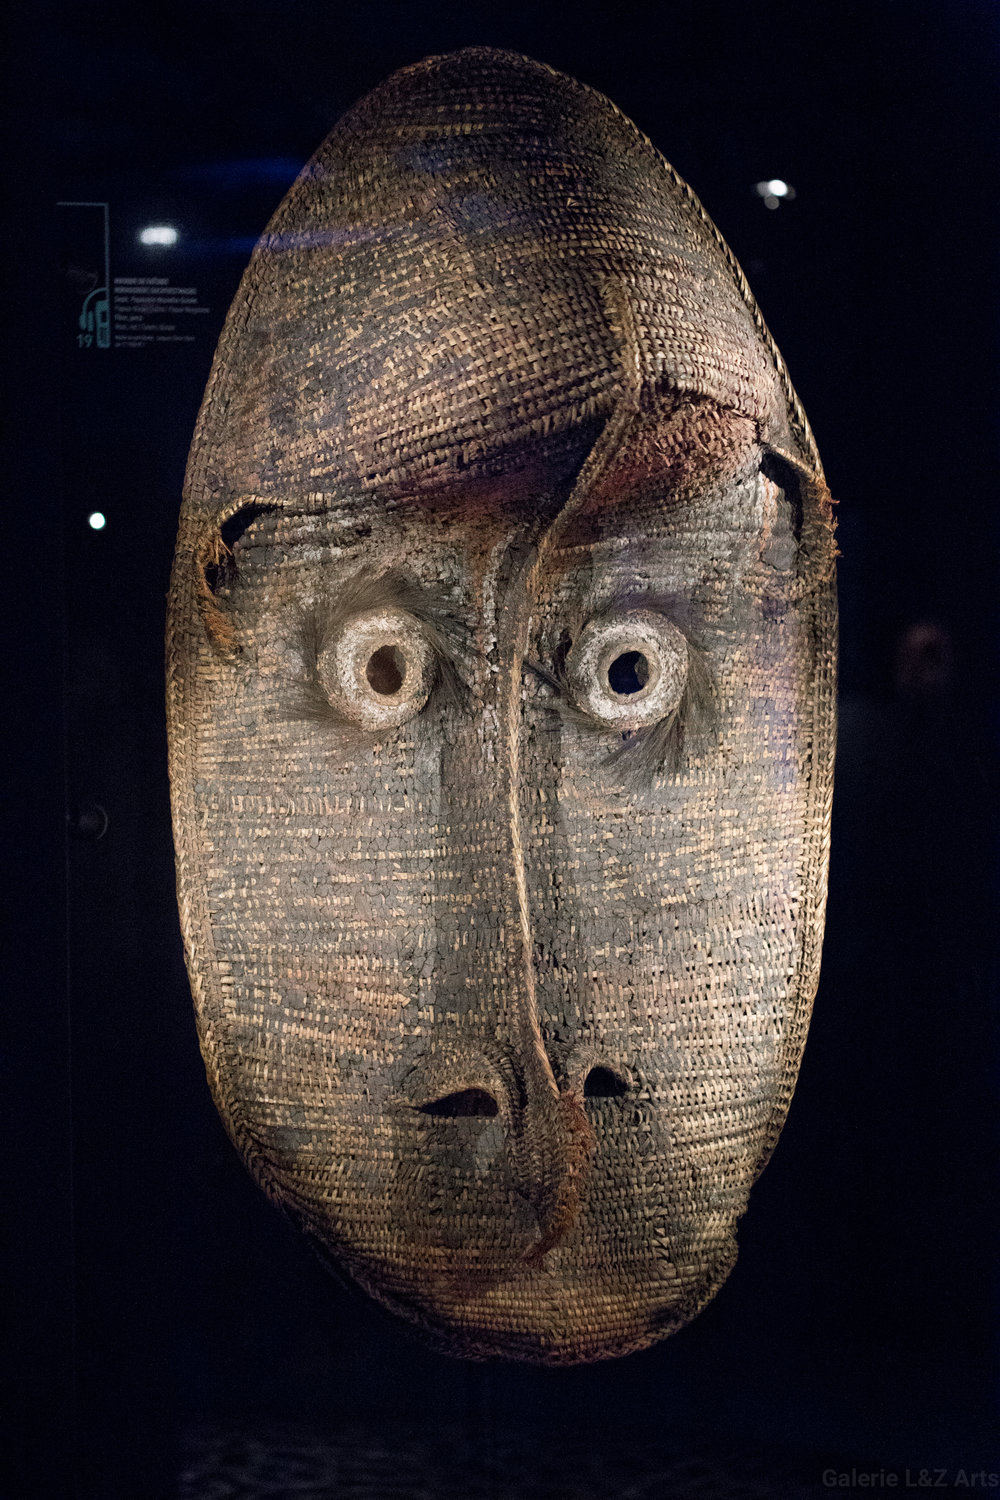 exposition-masque-art-tribal-africain-musee-quai-branly-belgique-galerie-lz-arts-liege-cite-miroir-oceanie-asie-japon-amerique-art-premier-nepal-16.jpg